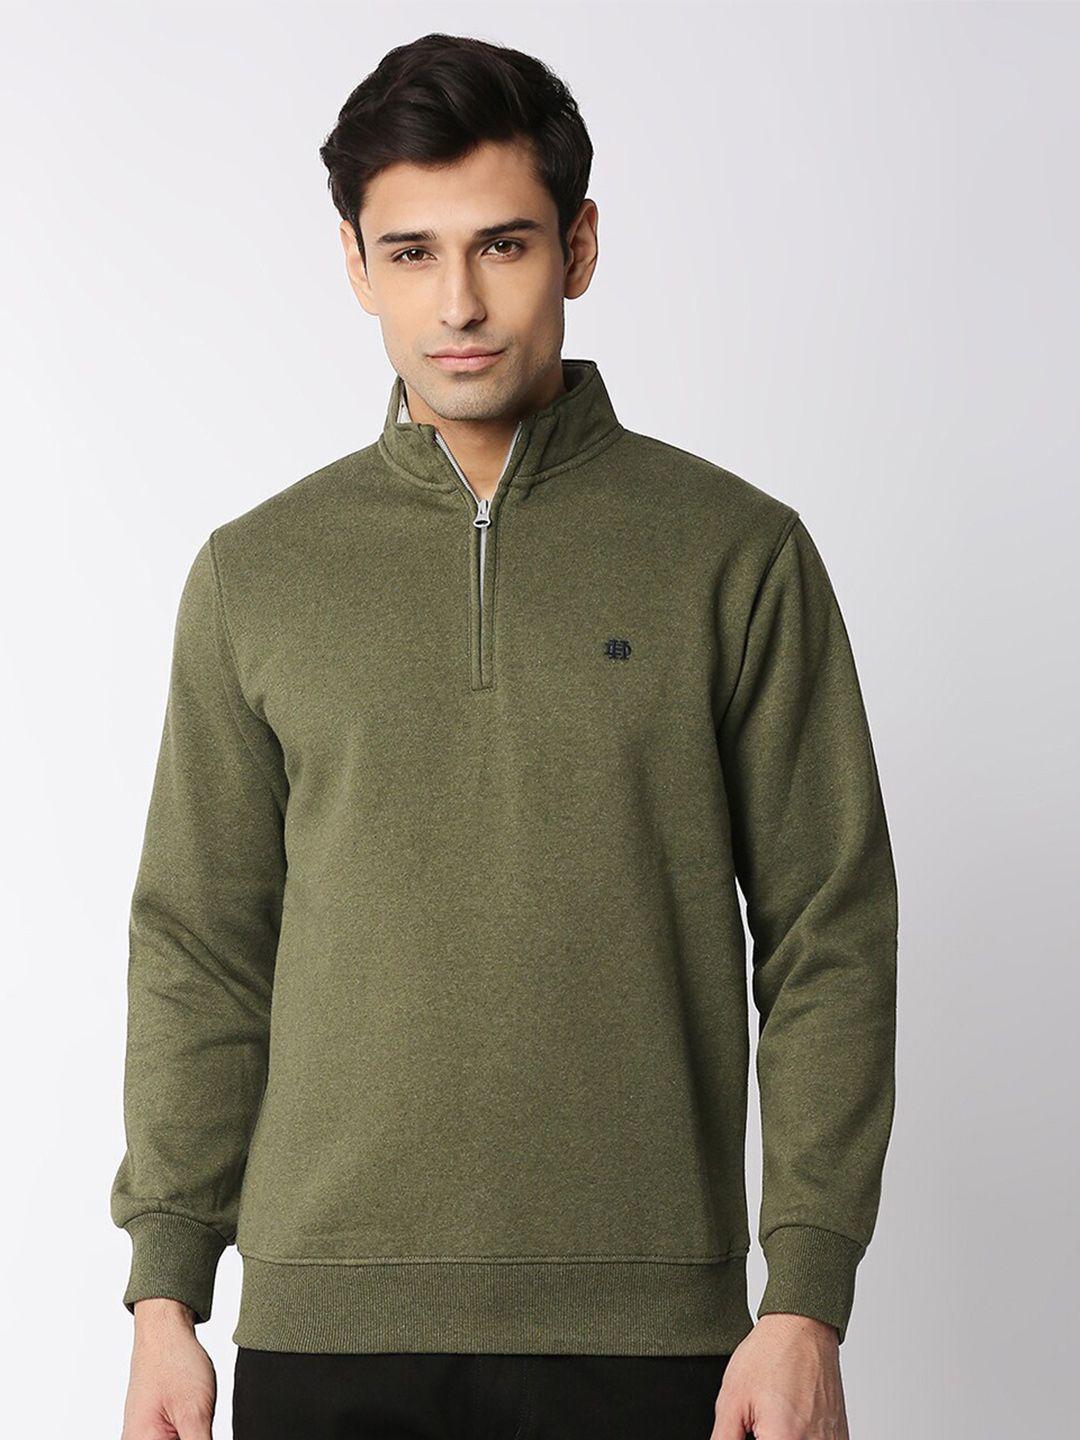 dragon hill mock collar fleece sweatshirt